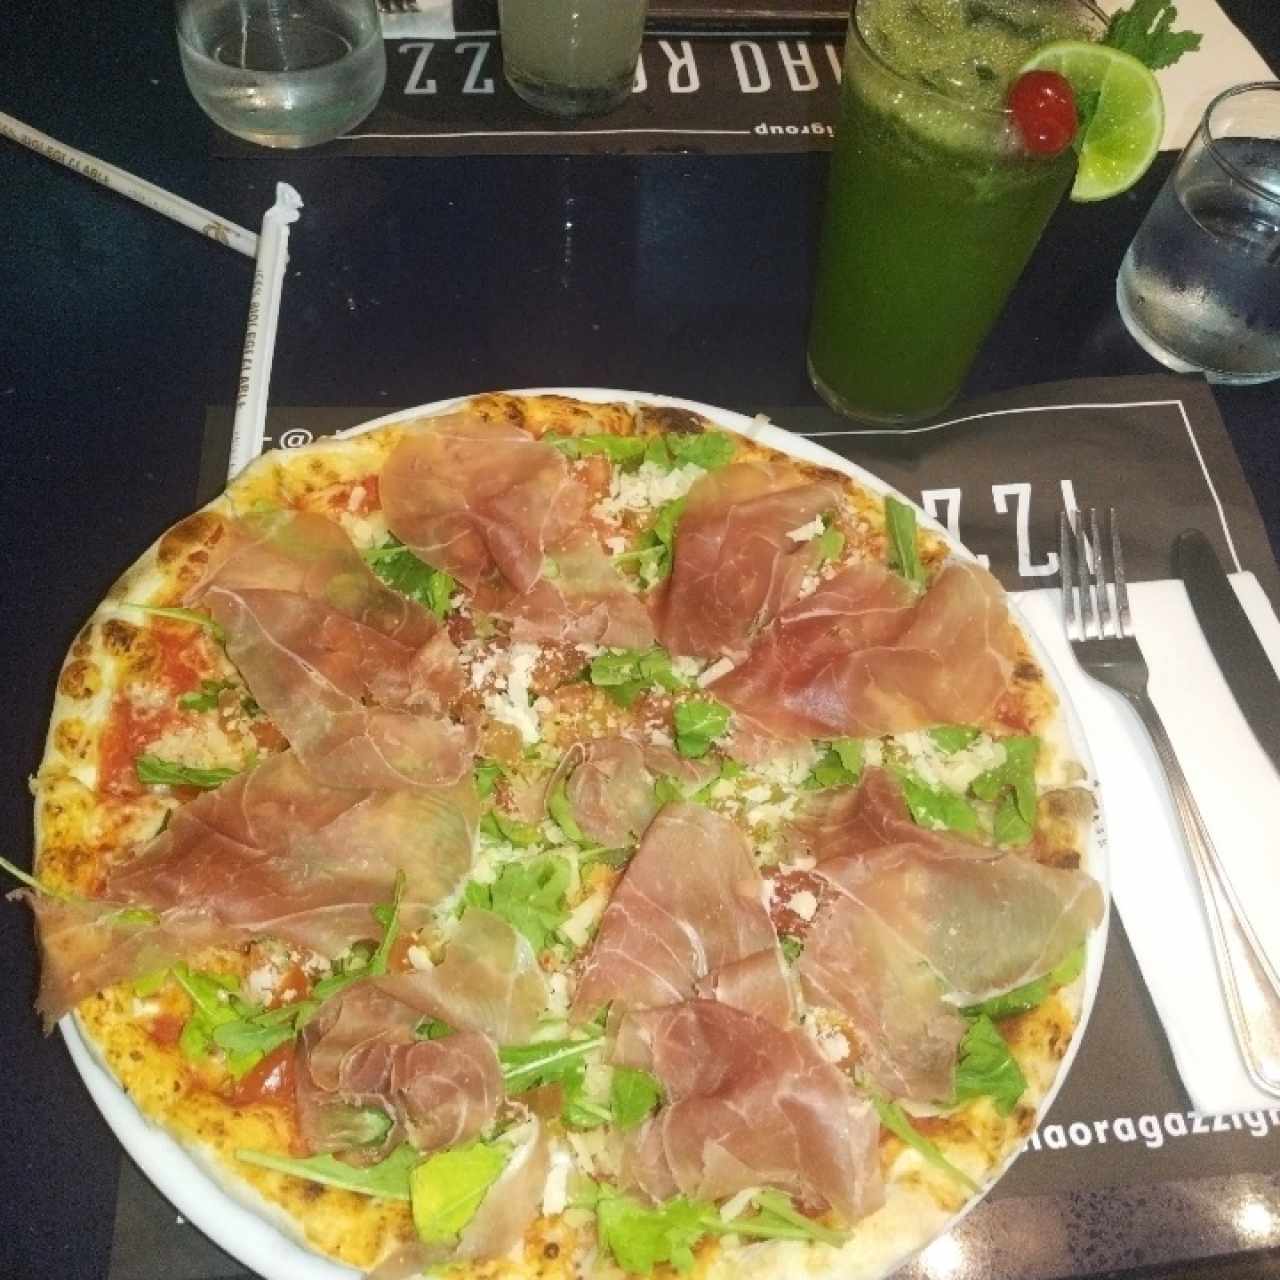 Pizza Gourmet - Emilia